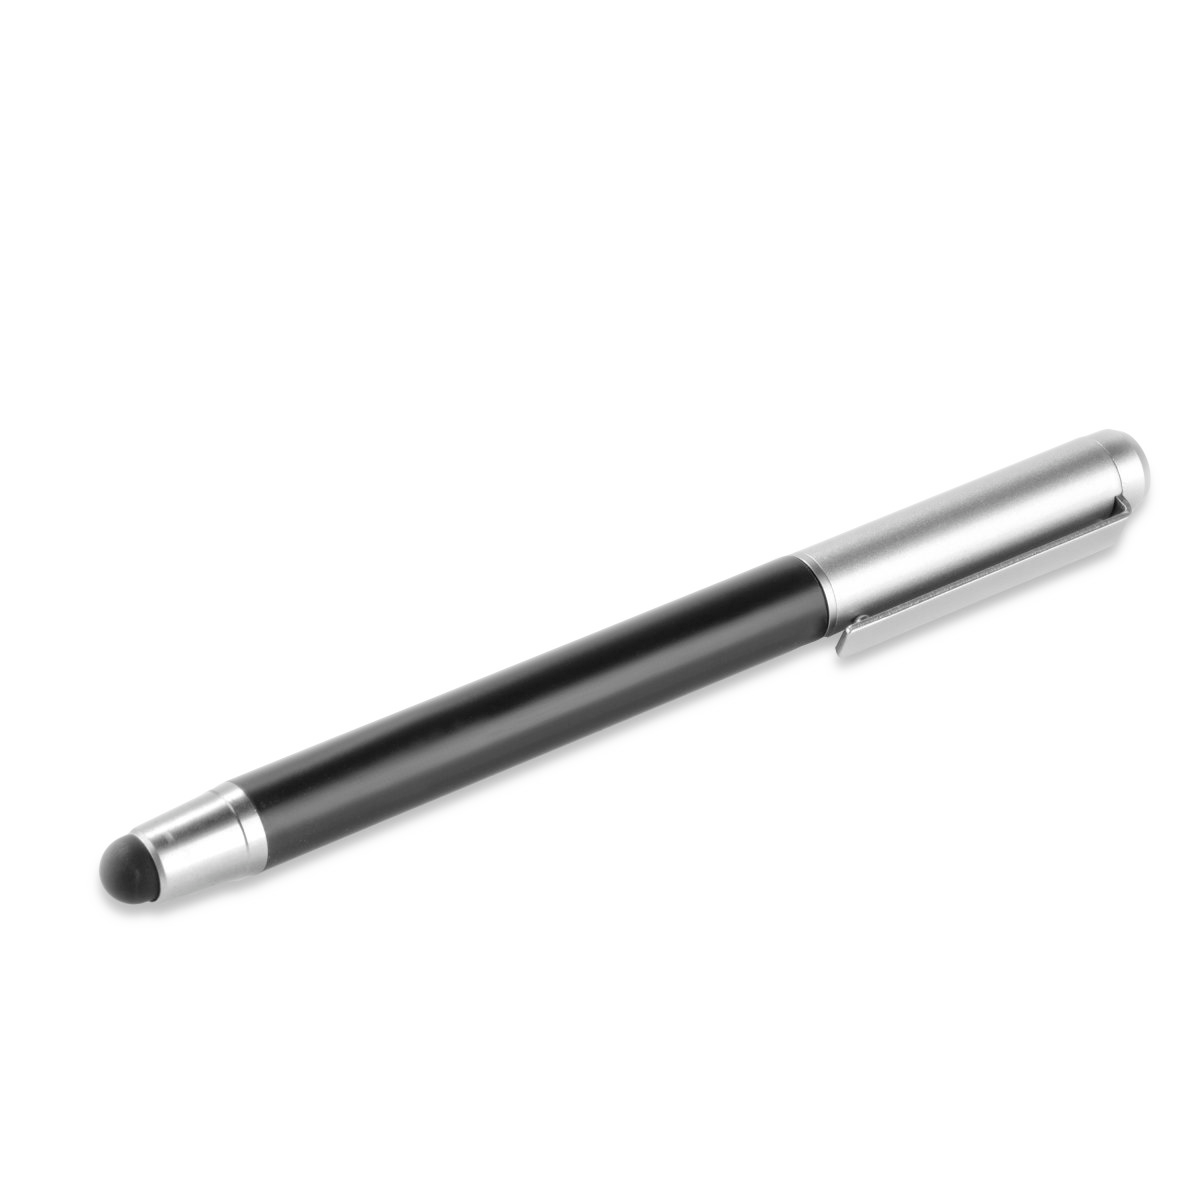 Universal stylus-pen 2in1